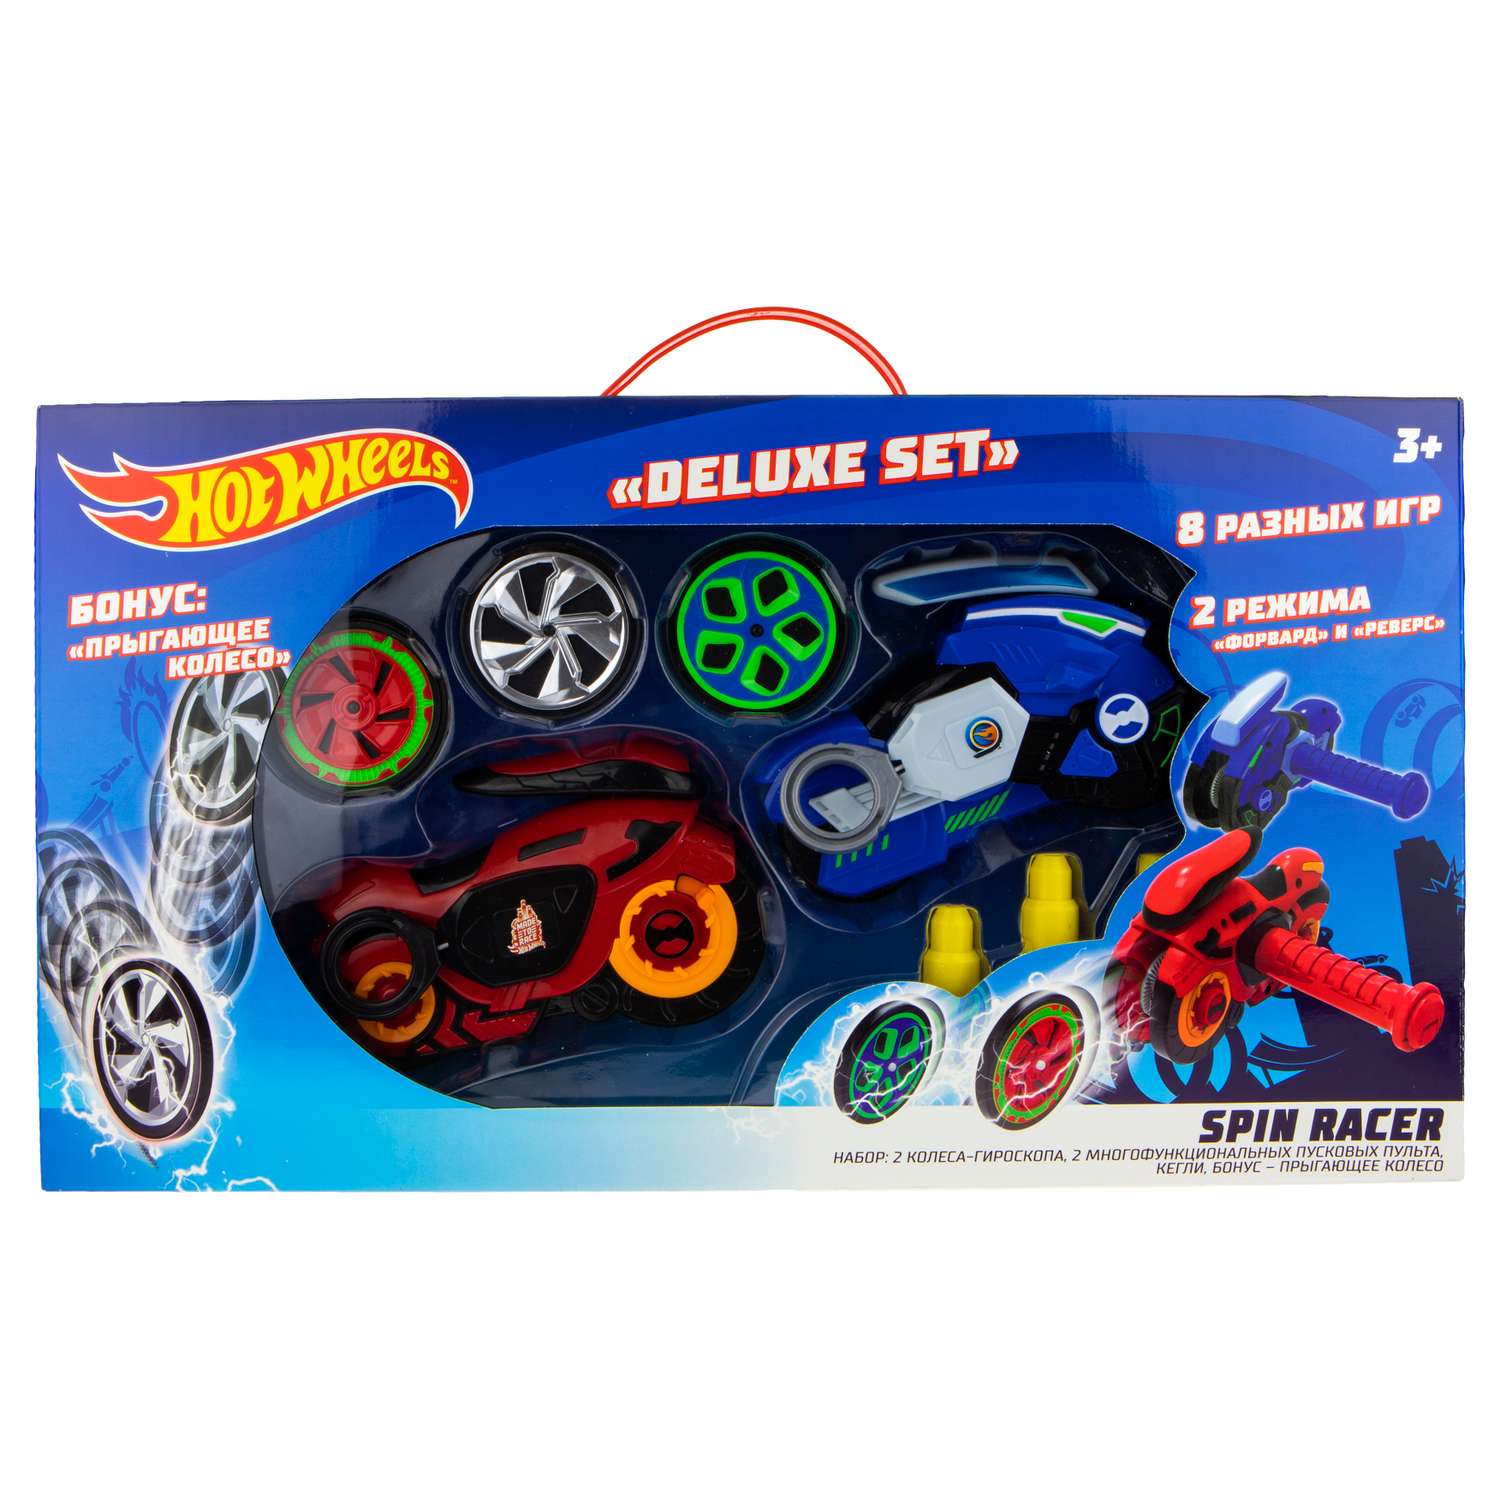 Игровой набор Hot Wheels Spin Racer Deluxe Set 2 игрушечных мотоцикла с колесами-гироскопами Т19375 - фото 12